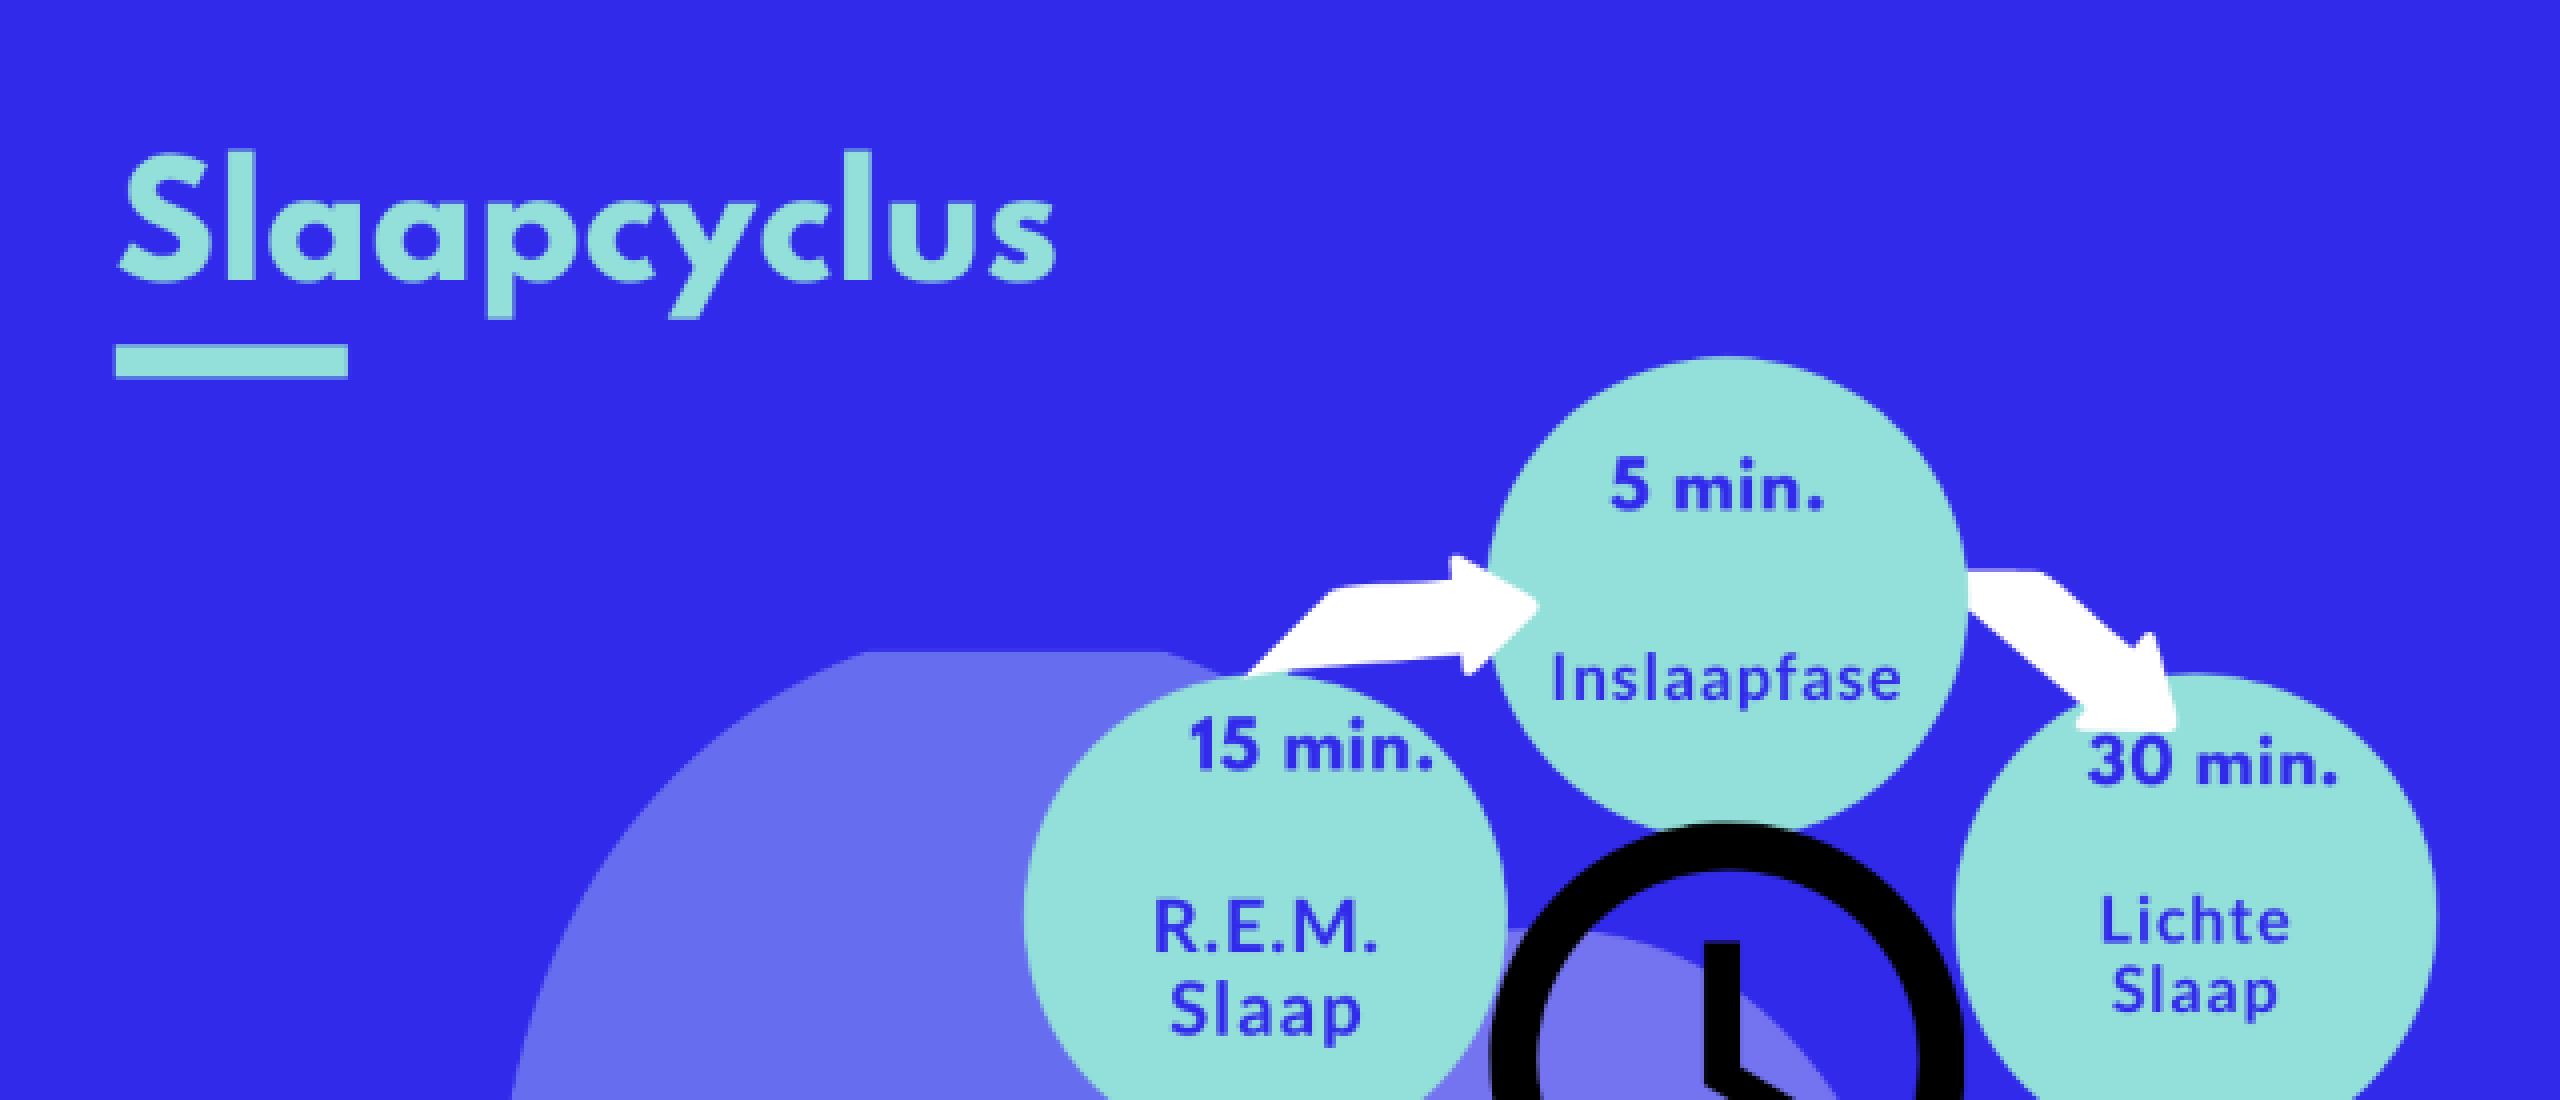 Slaapcyclus